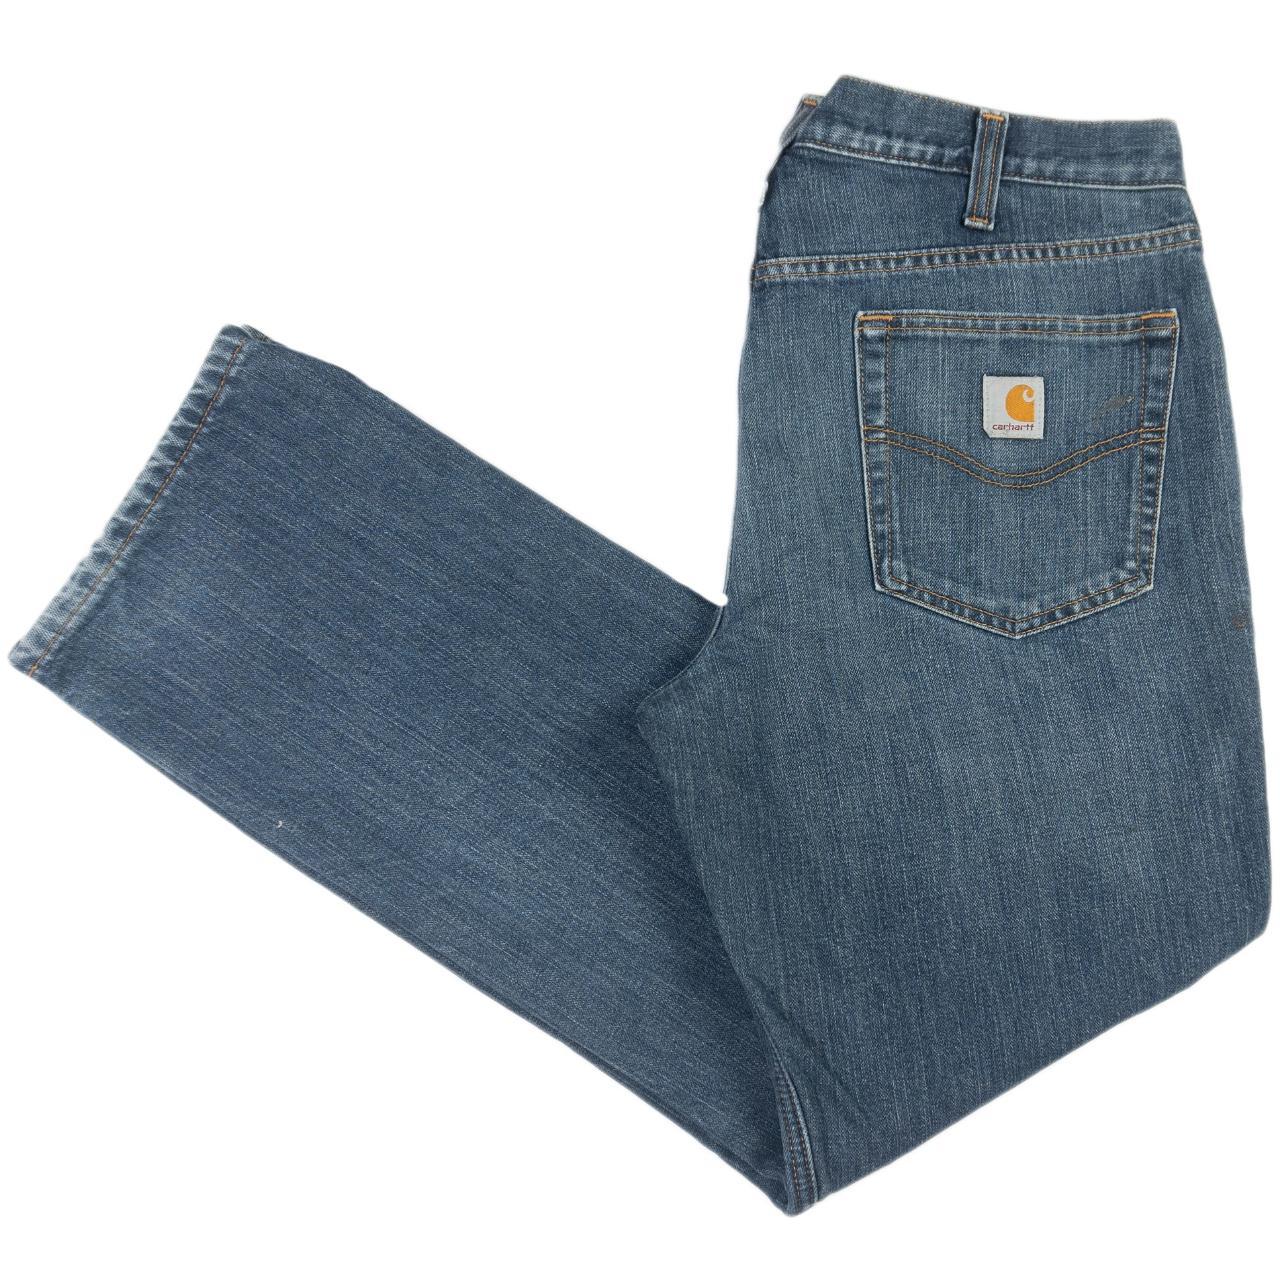 Carhartt Fleece Lined Jeans Blue Trousers Denim - Depop